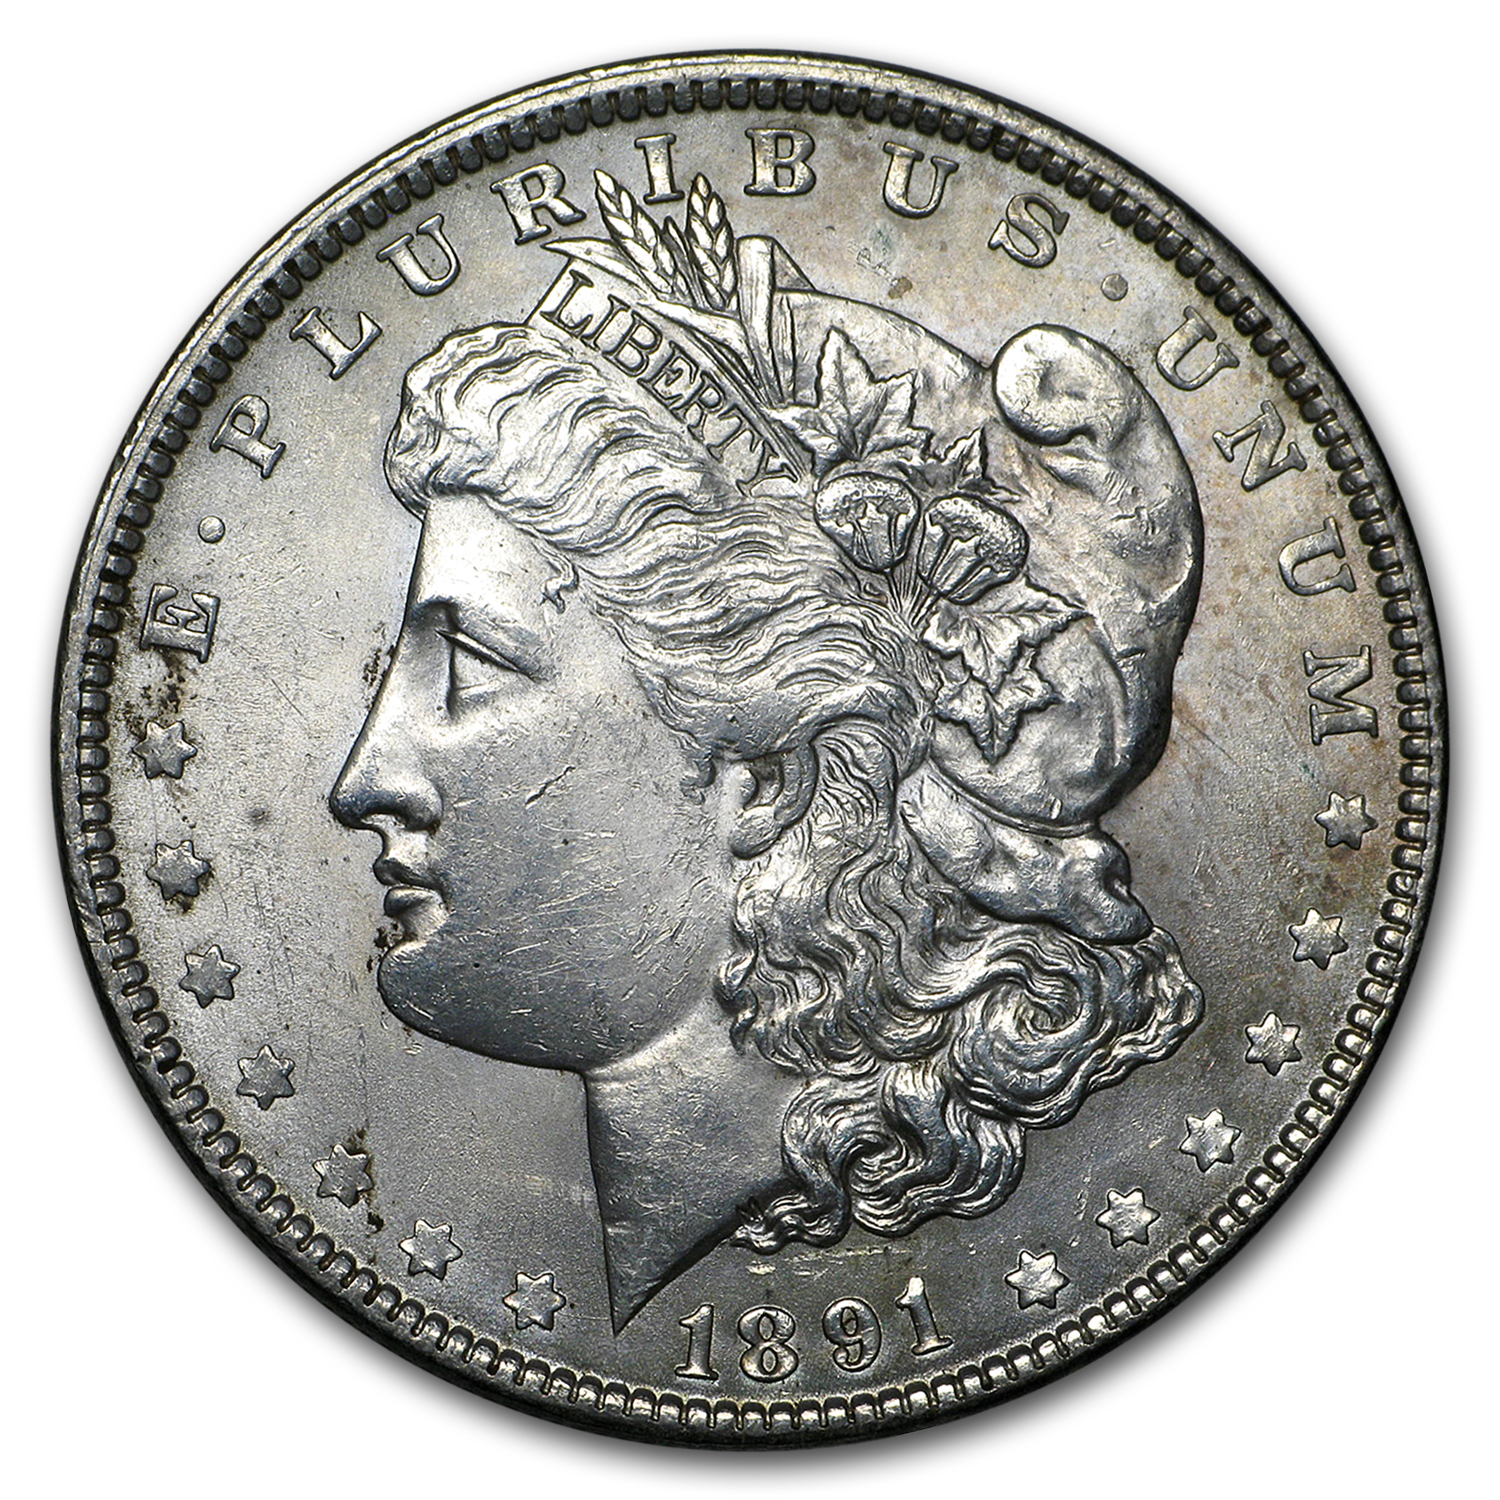 Buy 1891 Morgan Dollar AU